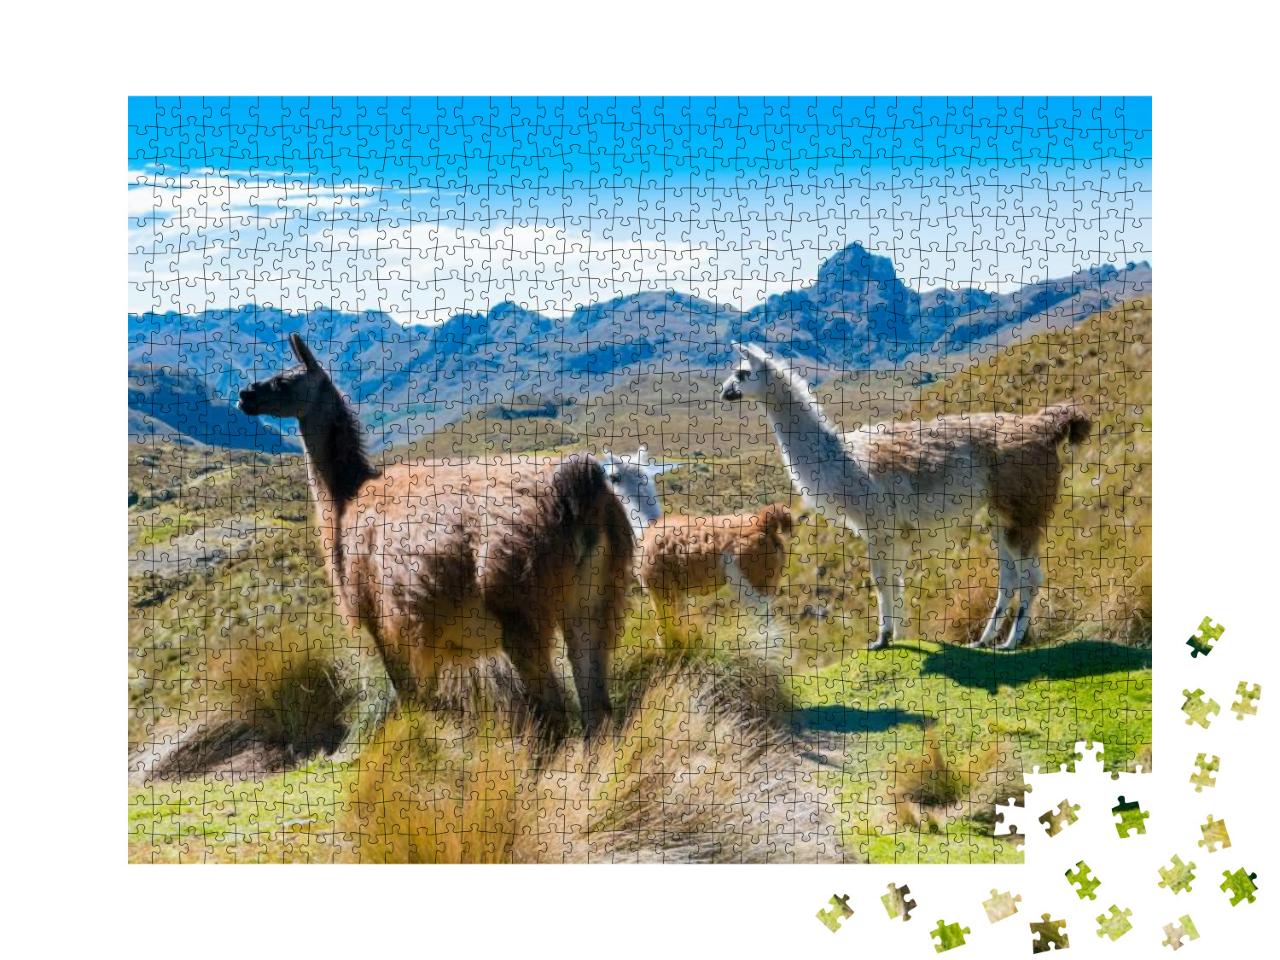 Llamas At the Cajas Park Cuenca Ecuador... Jigsaw Puzzle with 1000 pieces